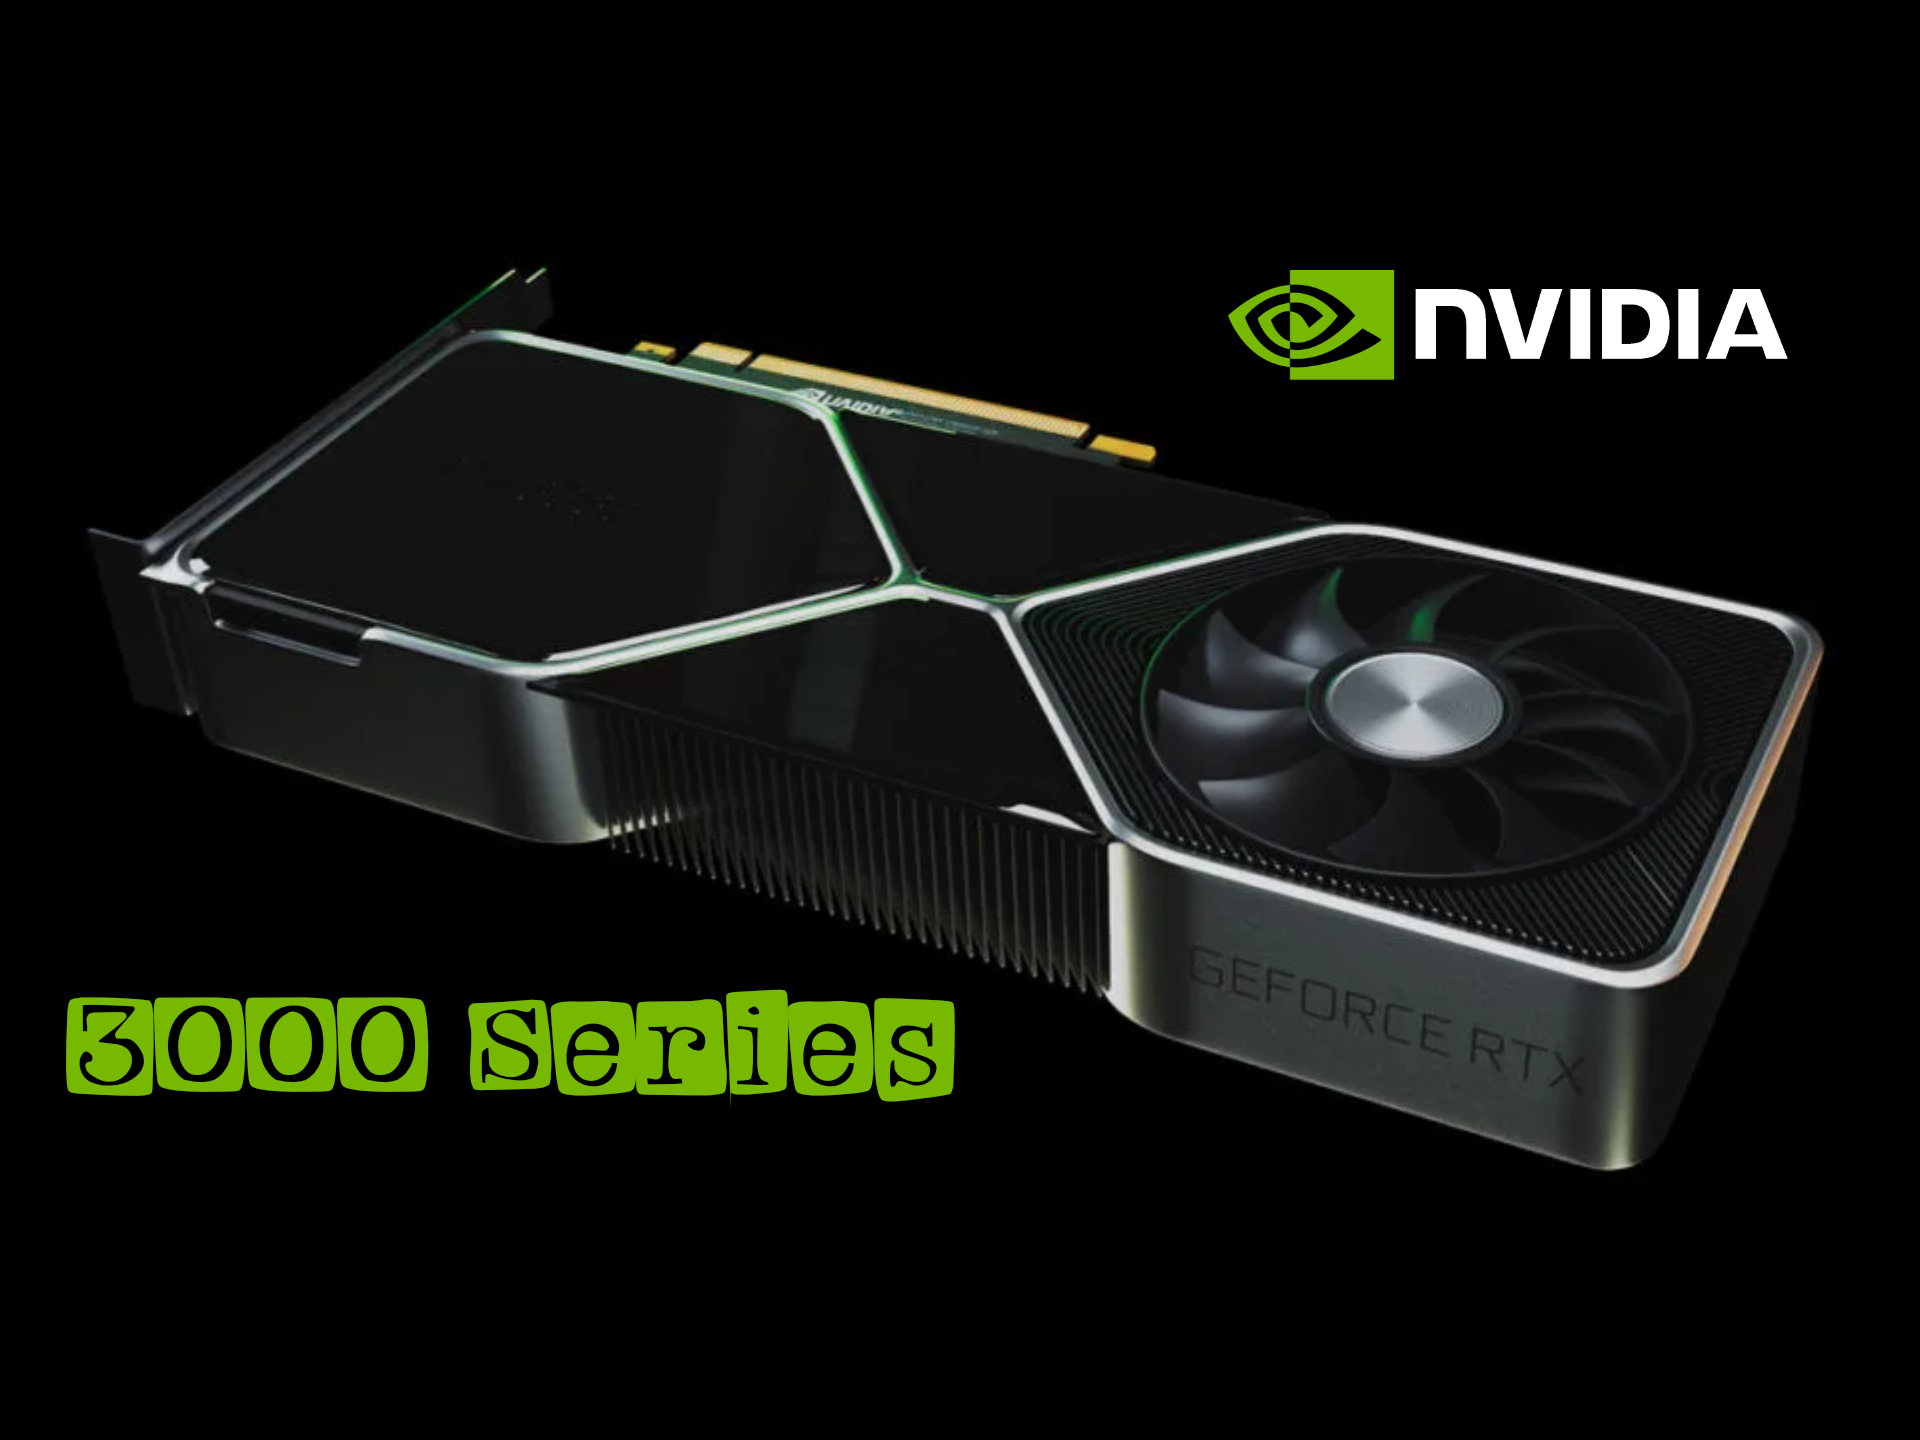 Σε λίγη ώρα η Nvidia παρουσιάζει τη νέα γενιά καρτών 3000